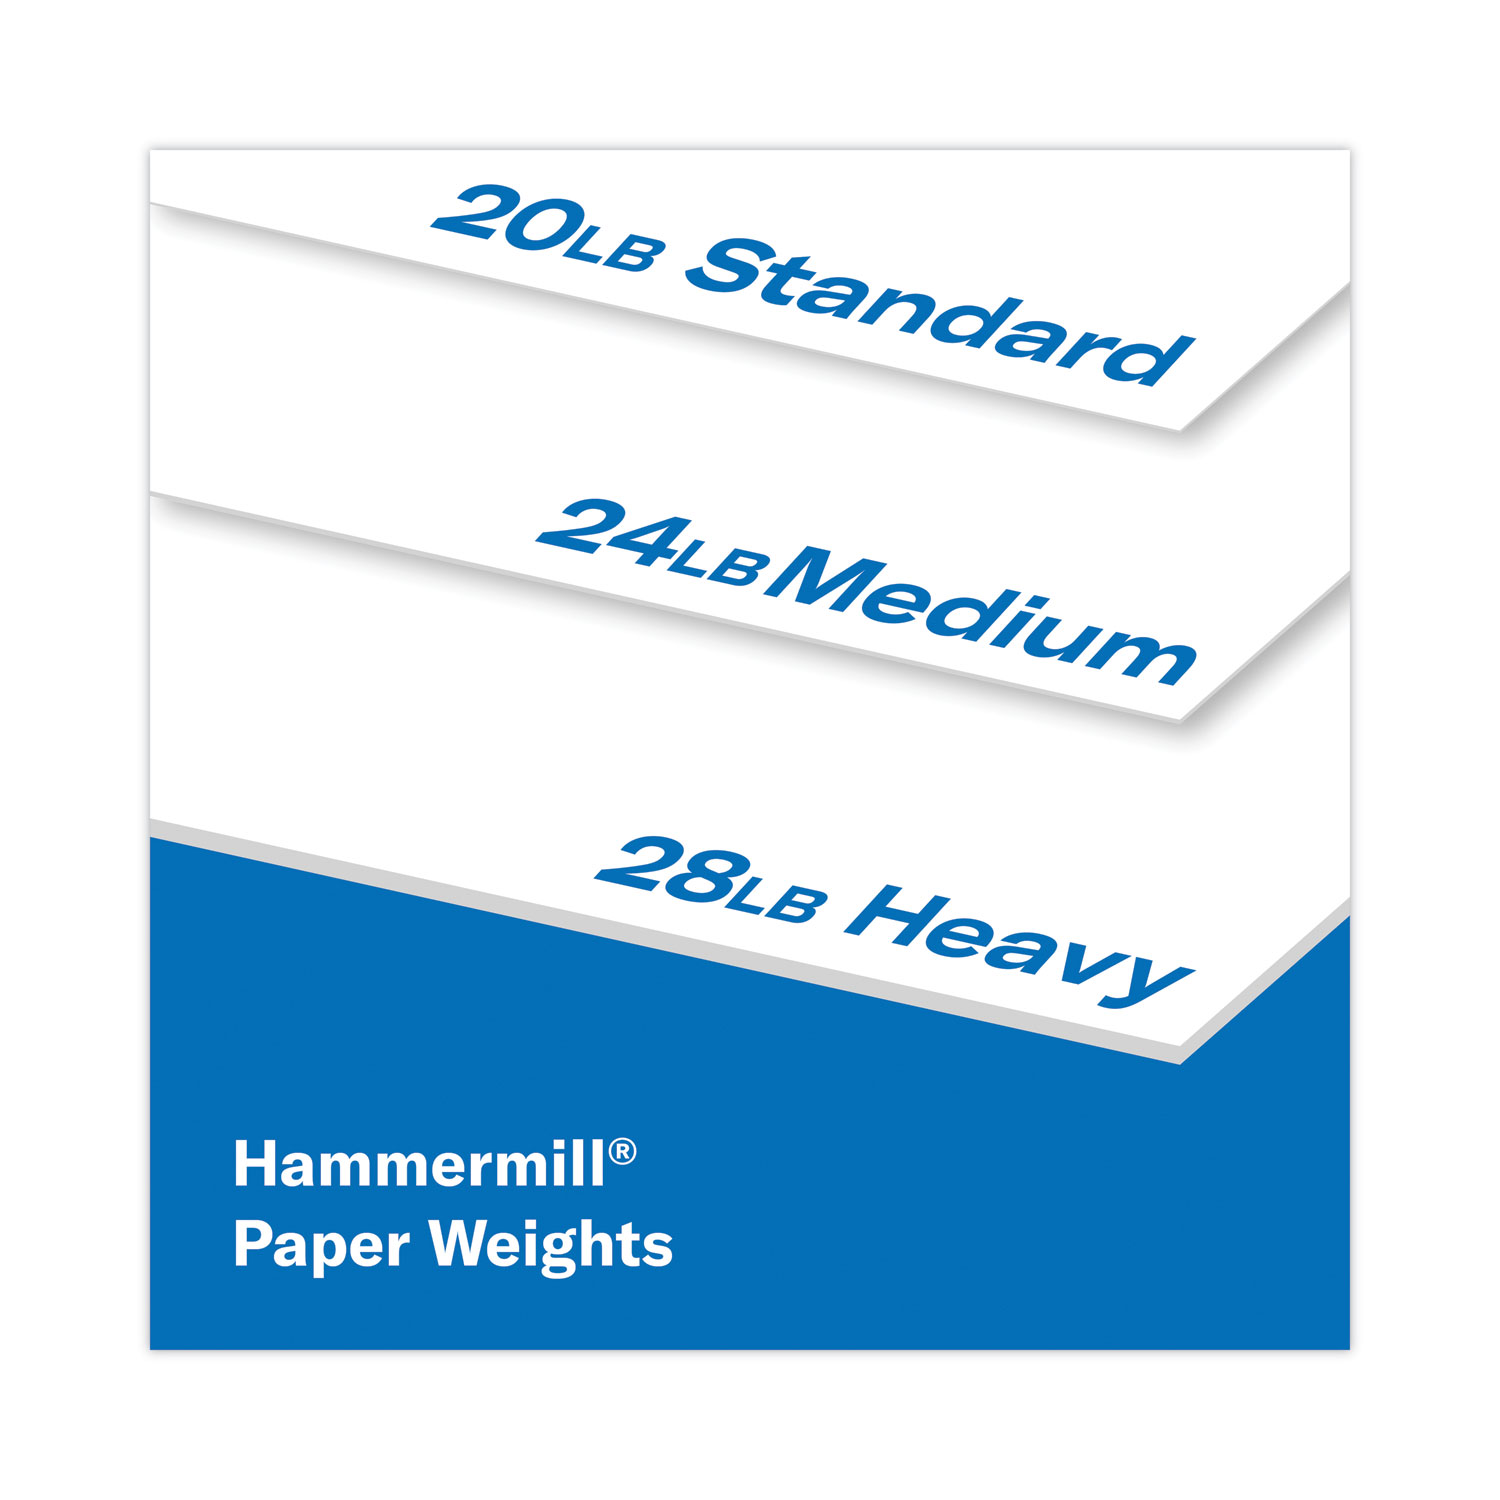 Hammermill Printer Paper, 20lb Copy Paper 8.5x11, 5 Ream, 2,500